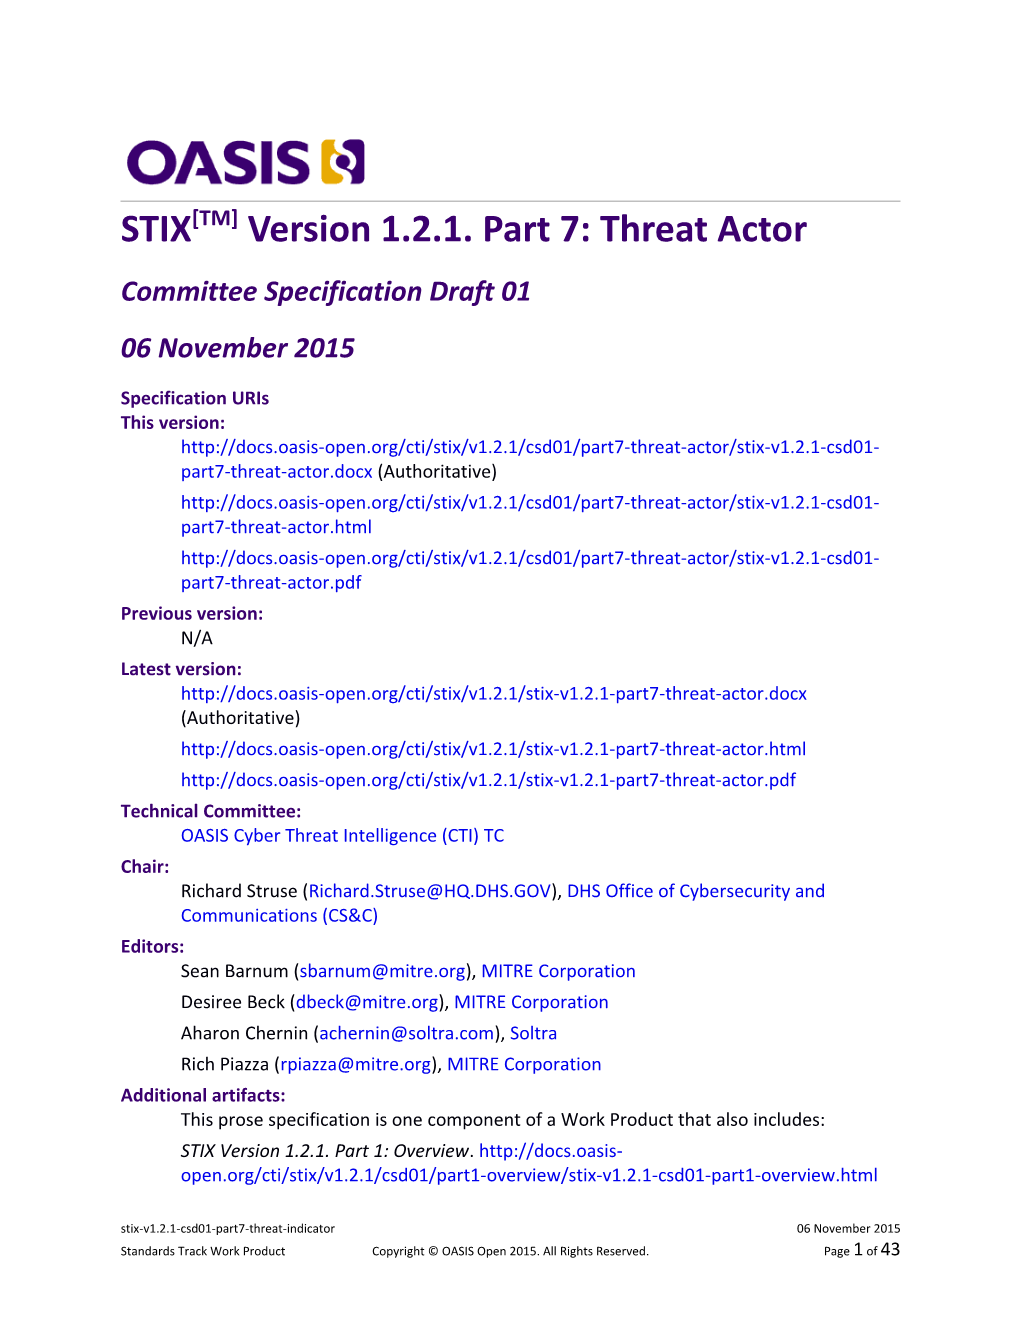 STIX Version 1.2.1. Part 7: Threat Actor